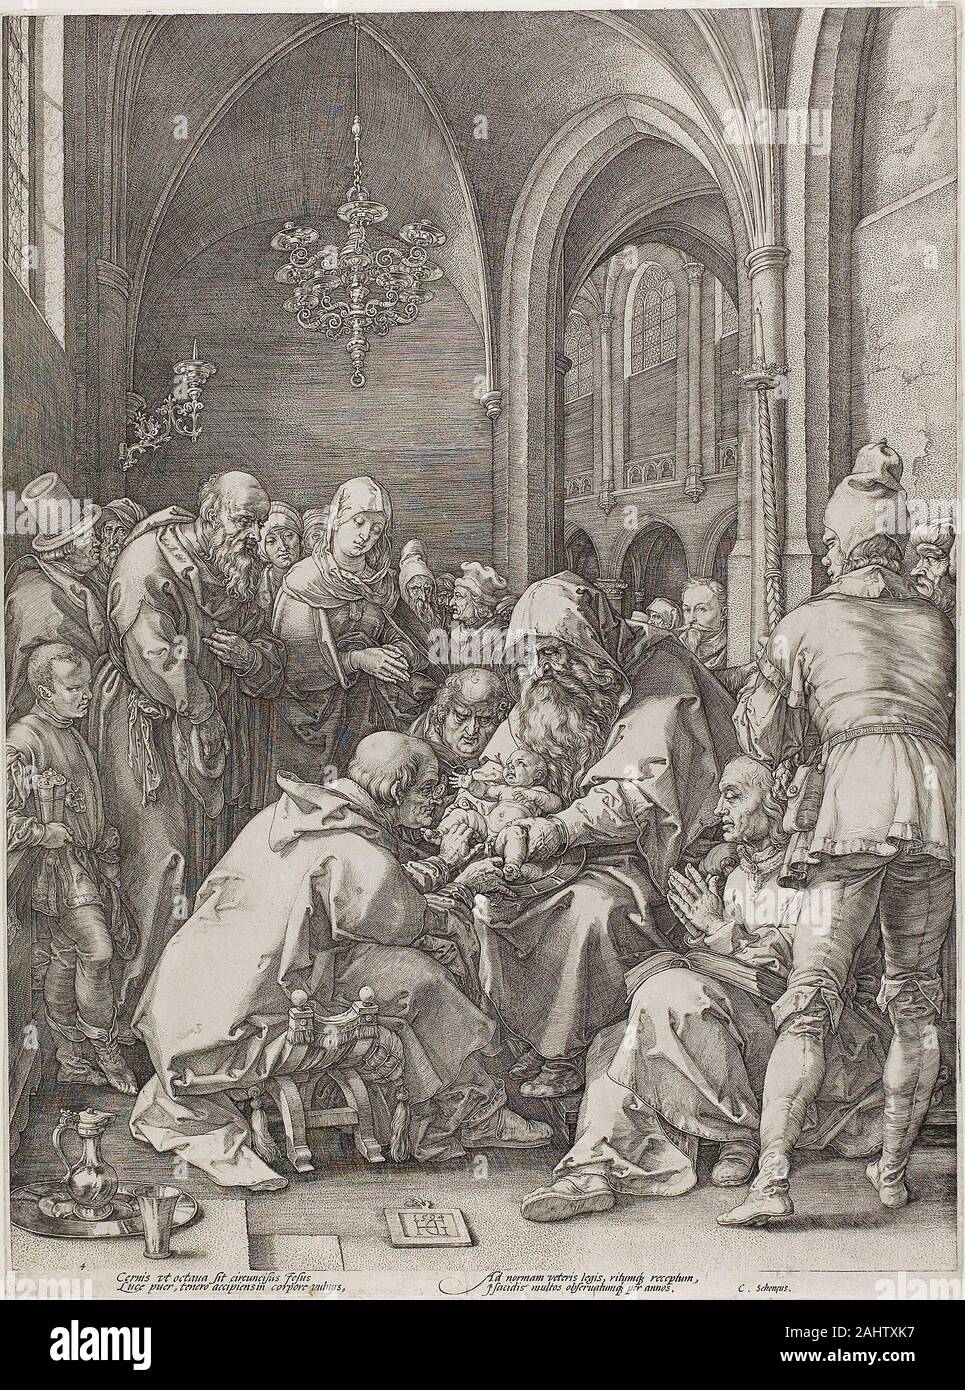 Hendrick Goltzius. Die Beschneidung, Platte vier von der Geburt und der frühen Leben Christi. 1594. Niederlande. Gravur auf Off-white Bütten feierte Dies drucken, gehört zum Leben der Jungfrau Serie. Die goltzius Zusammensetzung und Methode der Verwendung von Burin ist täuschend nahe, dass von Albrecht Dürer. Obwohl Goltzius bei der Erfassung von Dürers Stil gelungen, verhängte er auch seine eigenen Ideen und Einstellungen. Der Künstler stellte die Szene in eine exakte Wiedergabe einer Kapelle St. Bravo Kirche in Haarlem. Der Künstler dargestellt auch er stand in der torbogen im Hintergrund, den Blick auf das VI. Stockfoto